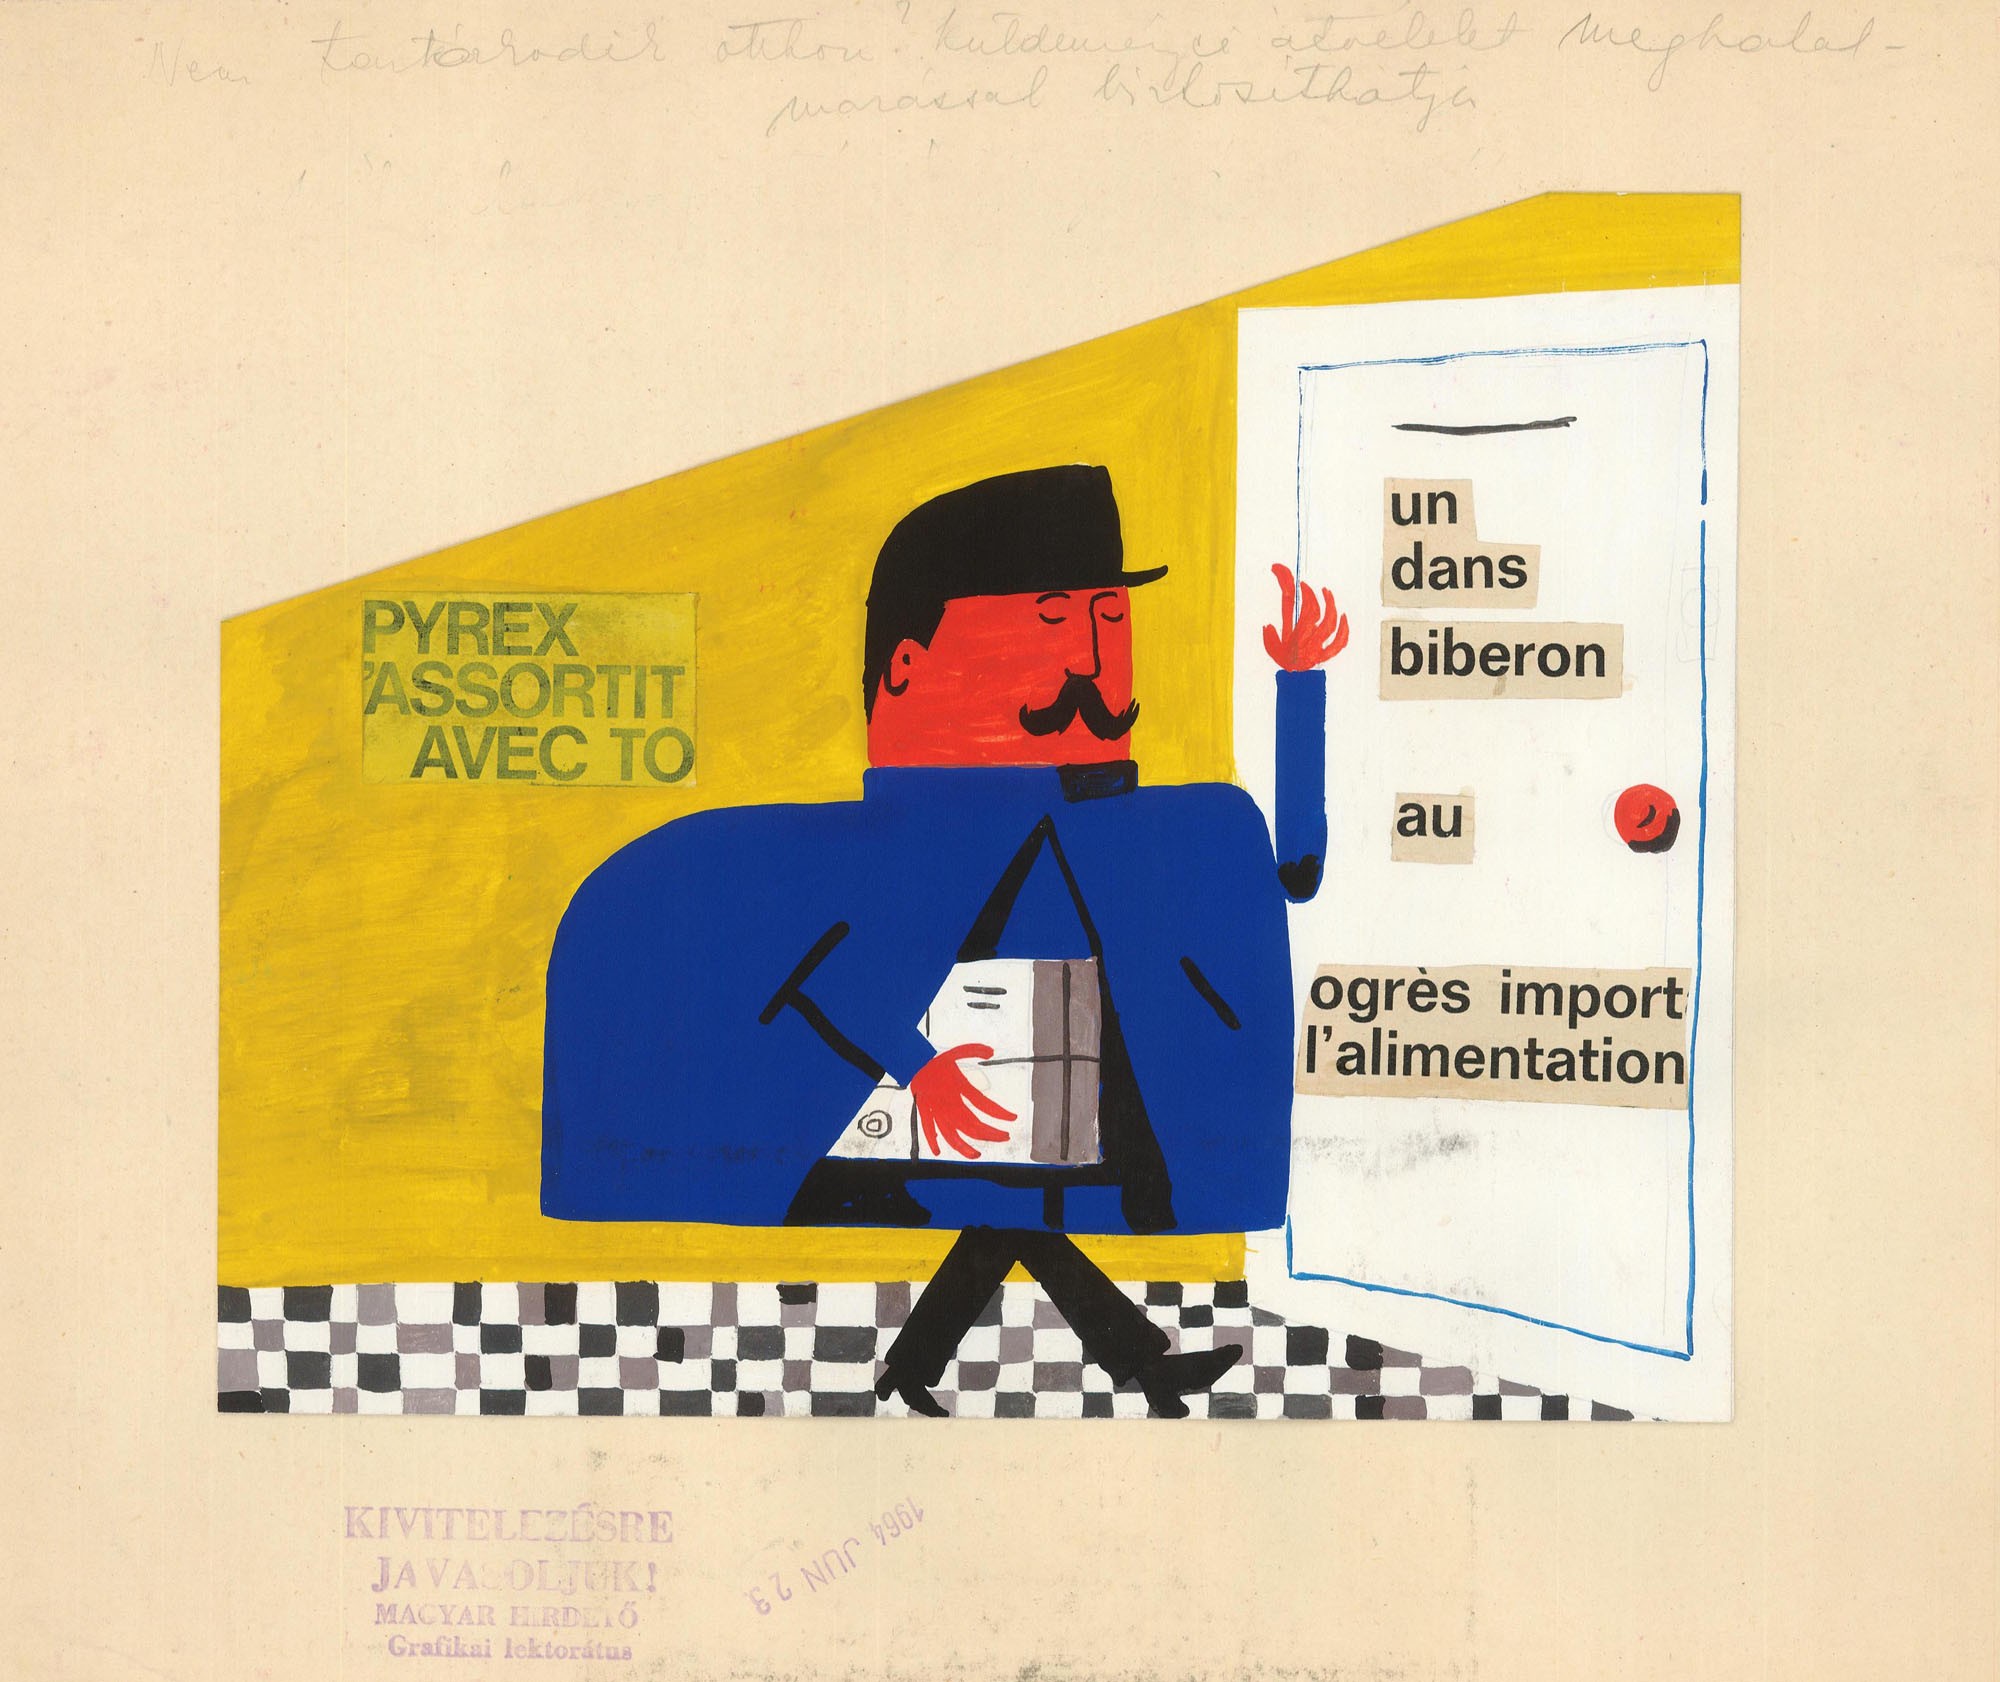 Postai szolgáltatásokat népszerűsítő kiadvány terve, felirata: Pyrex 'assortit avec to, un dans biberon au ogrés import l'alimentation (Postamúzeum CC BY-NC-SA)